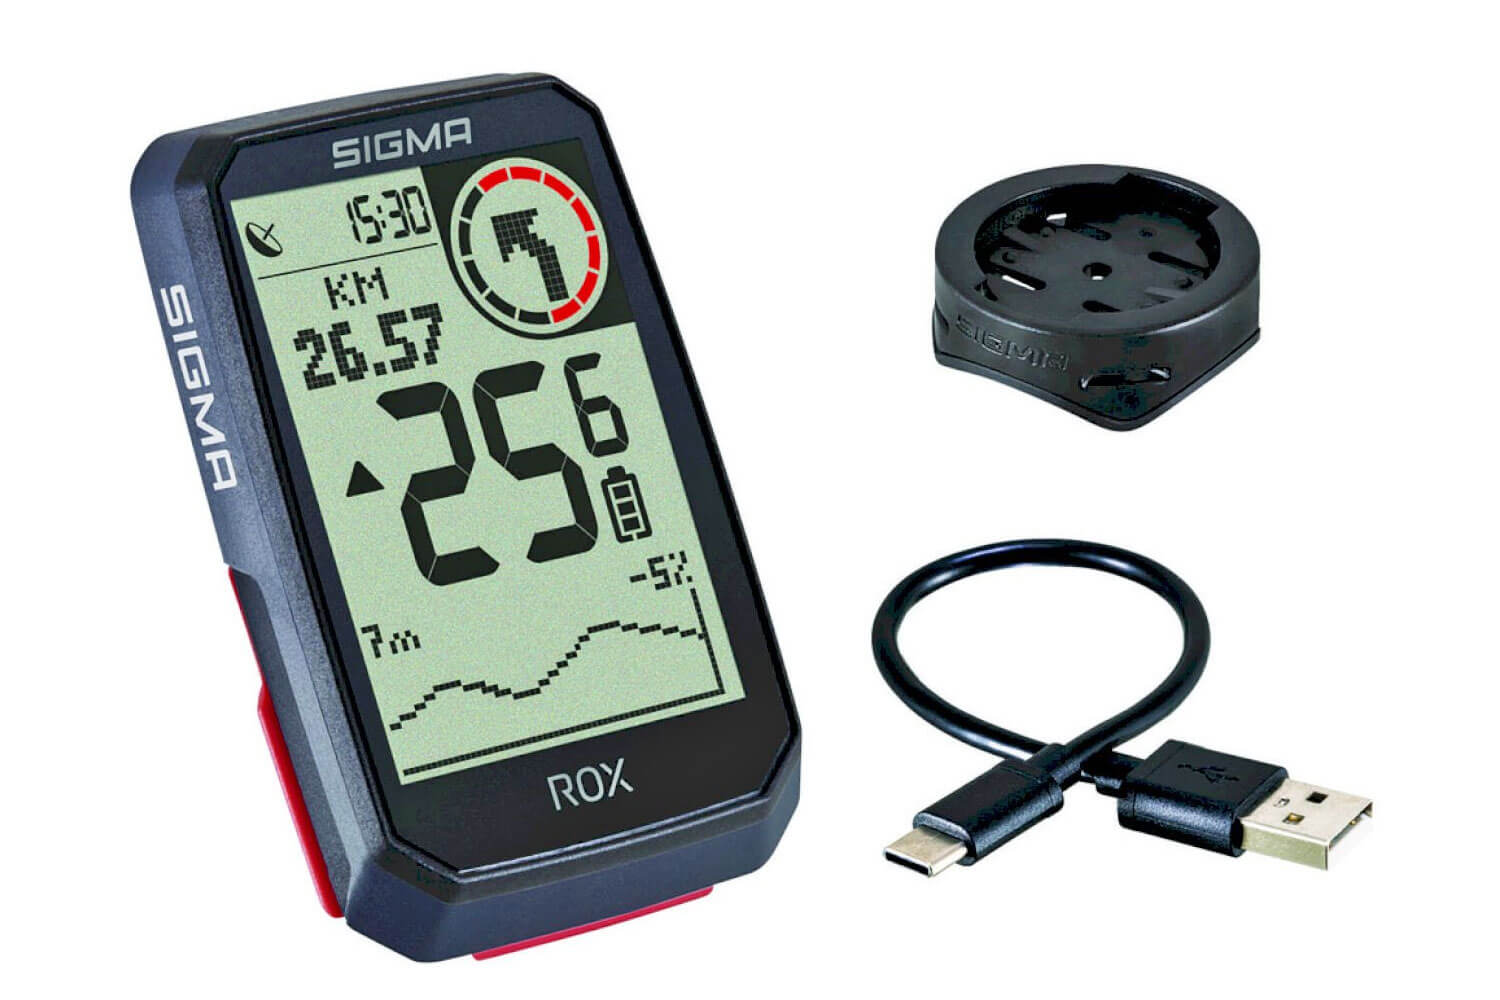 Sigma Rox 4.0 (GPS) Fahrradcomputer  